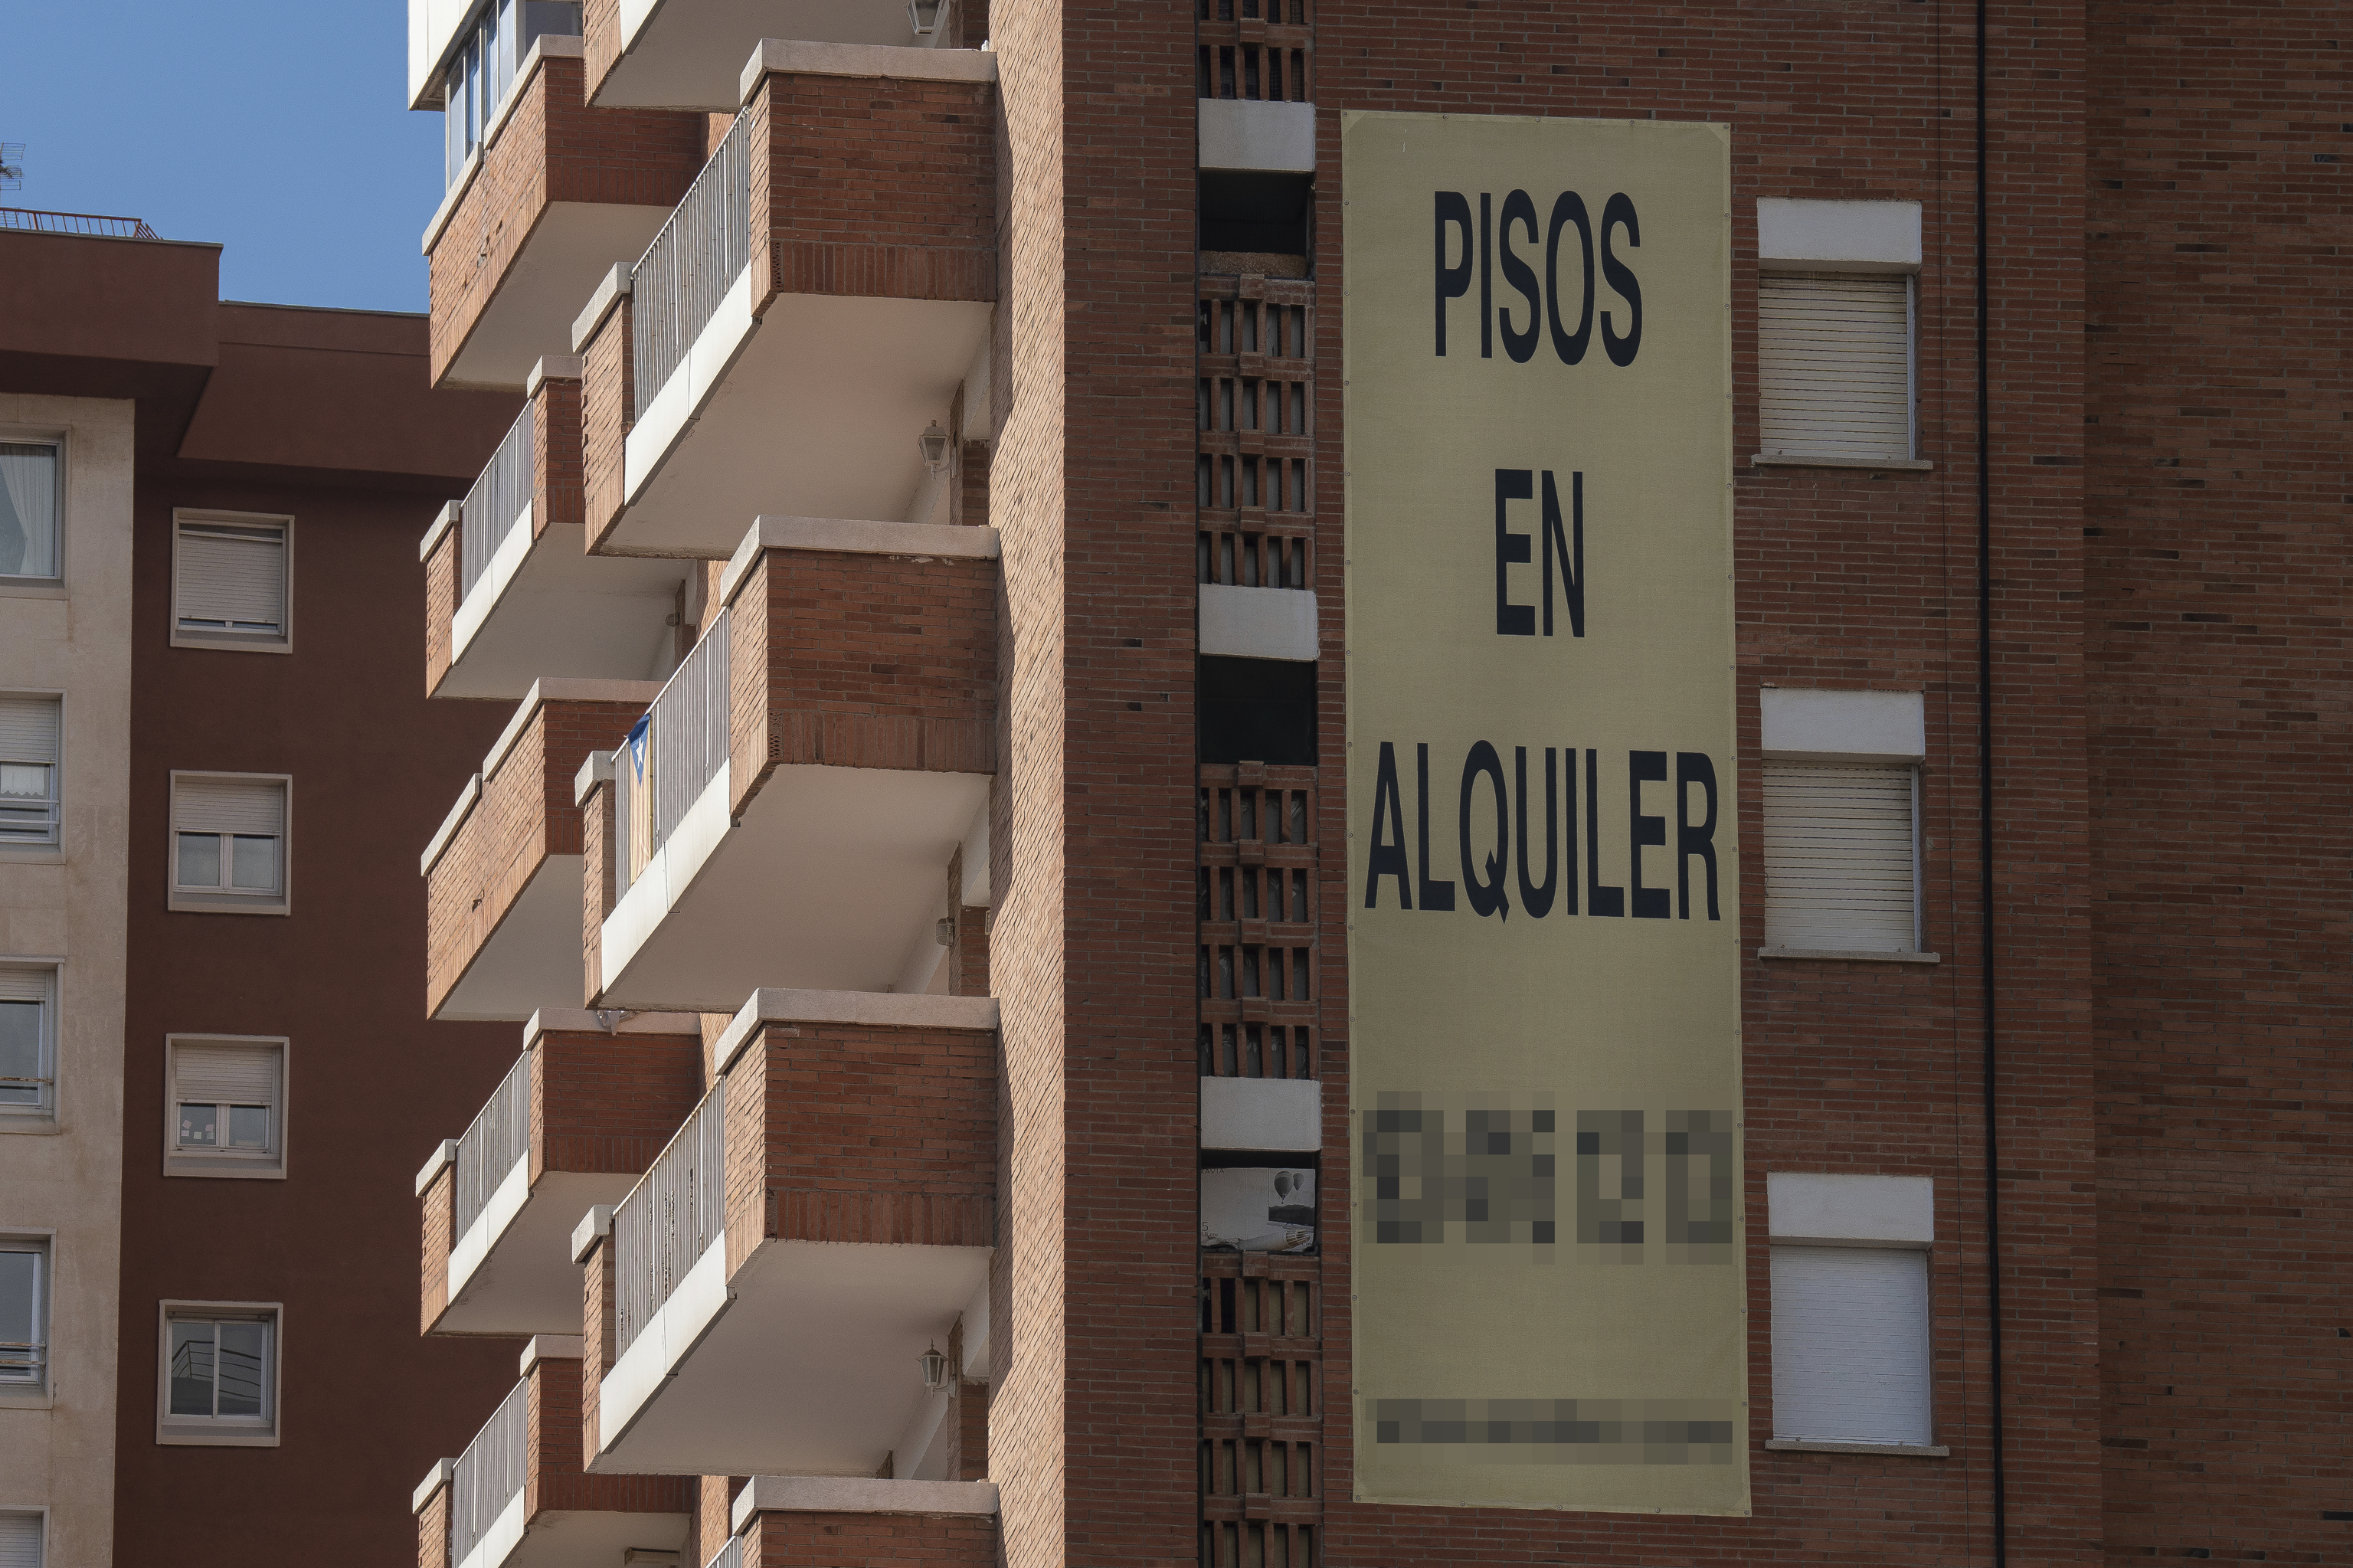 Cartel de alquiler de viviendas en la fachada de un edificio.